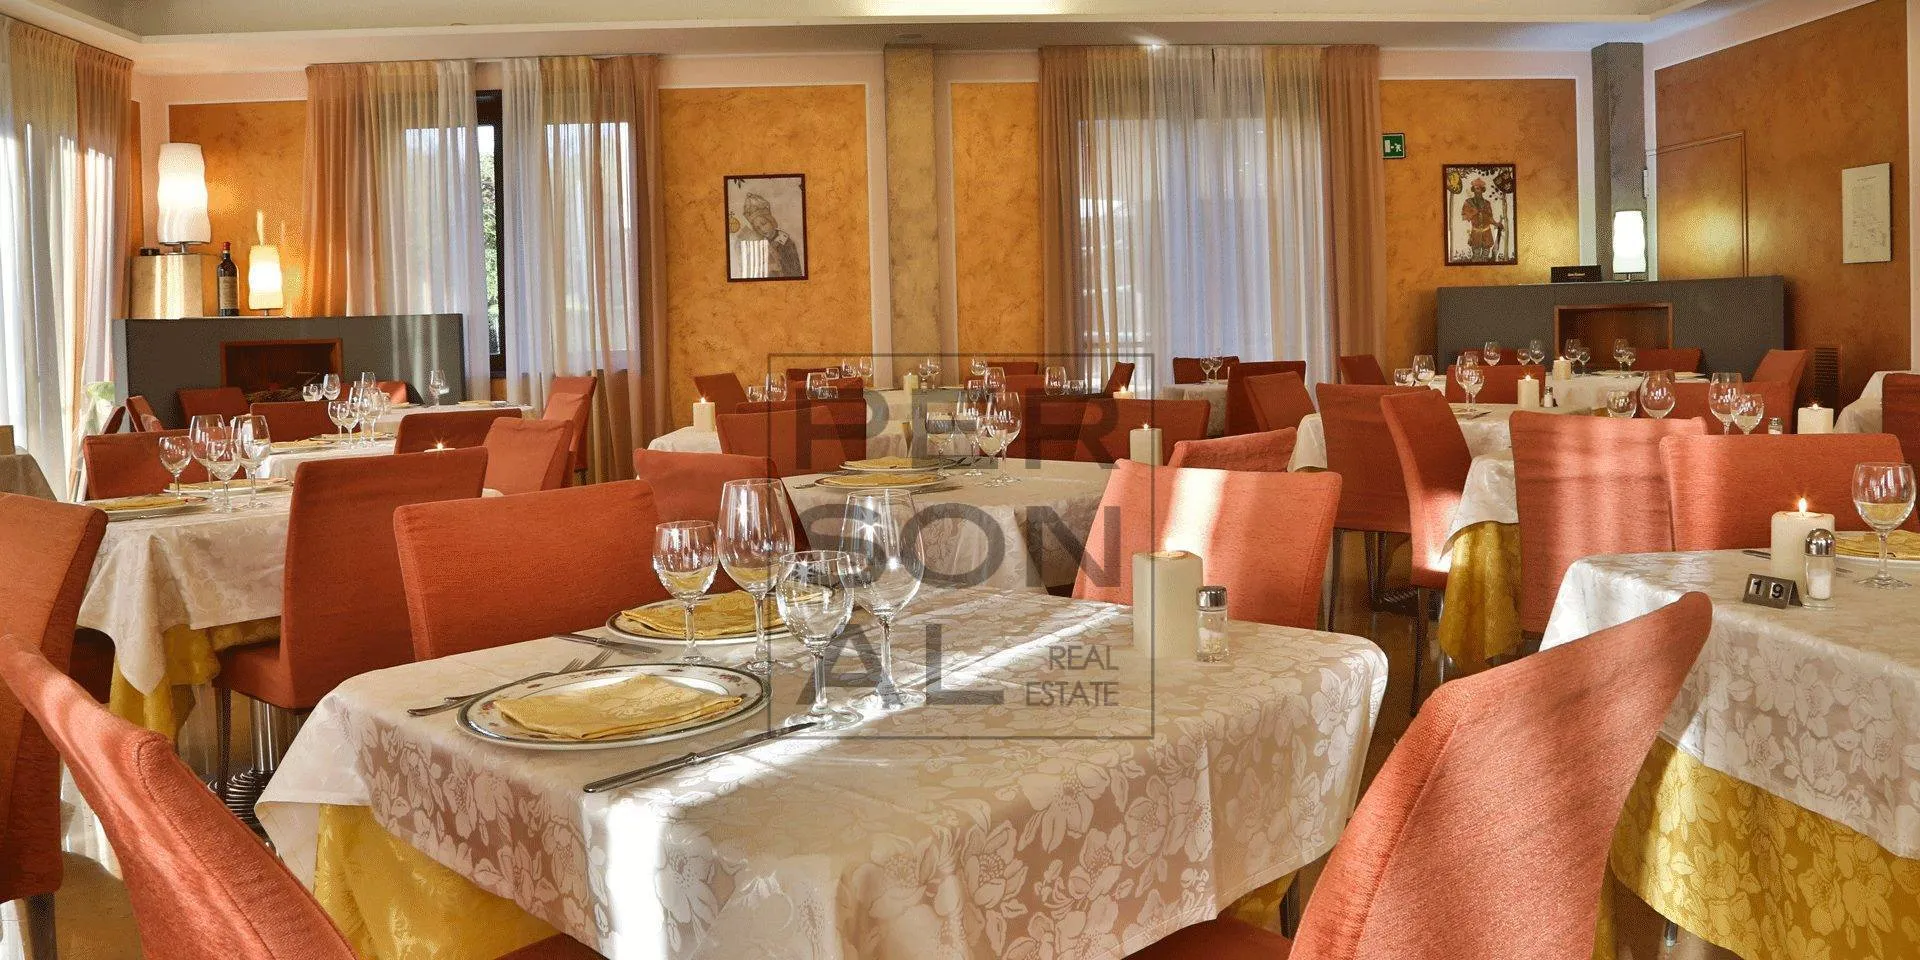 Immagine per Albergo/Hotel in vednita a Baselga di Pinè